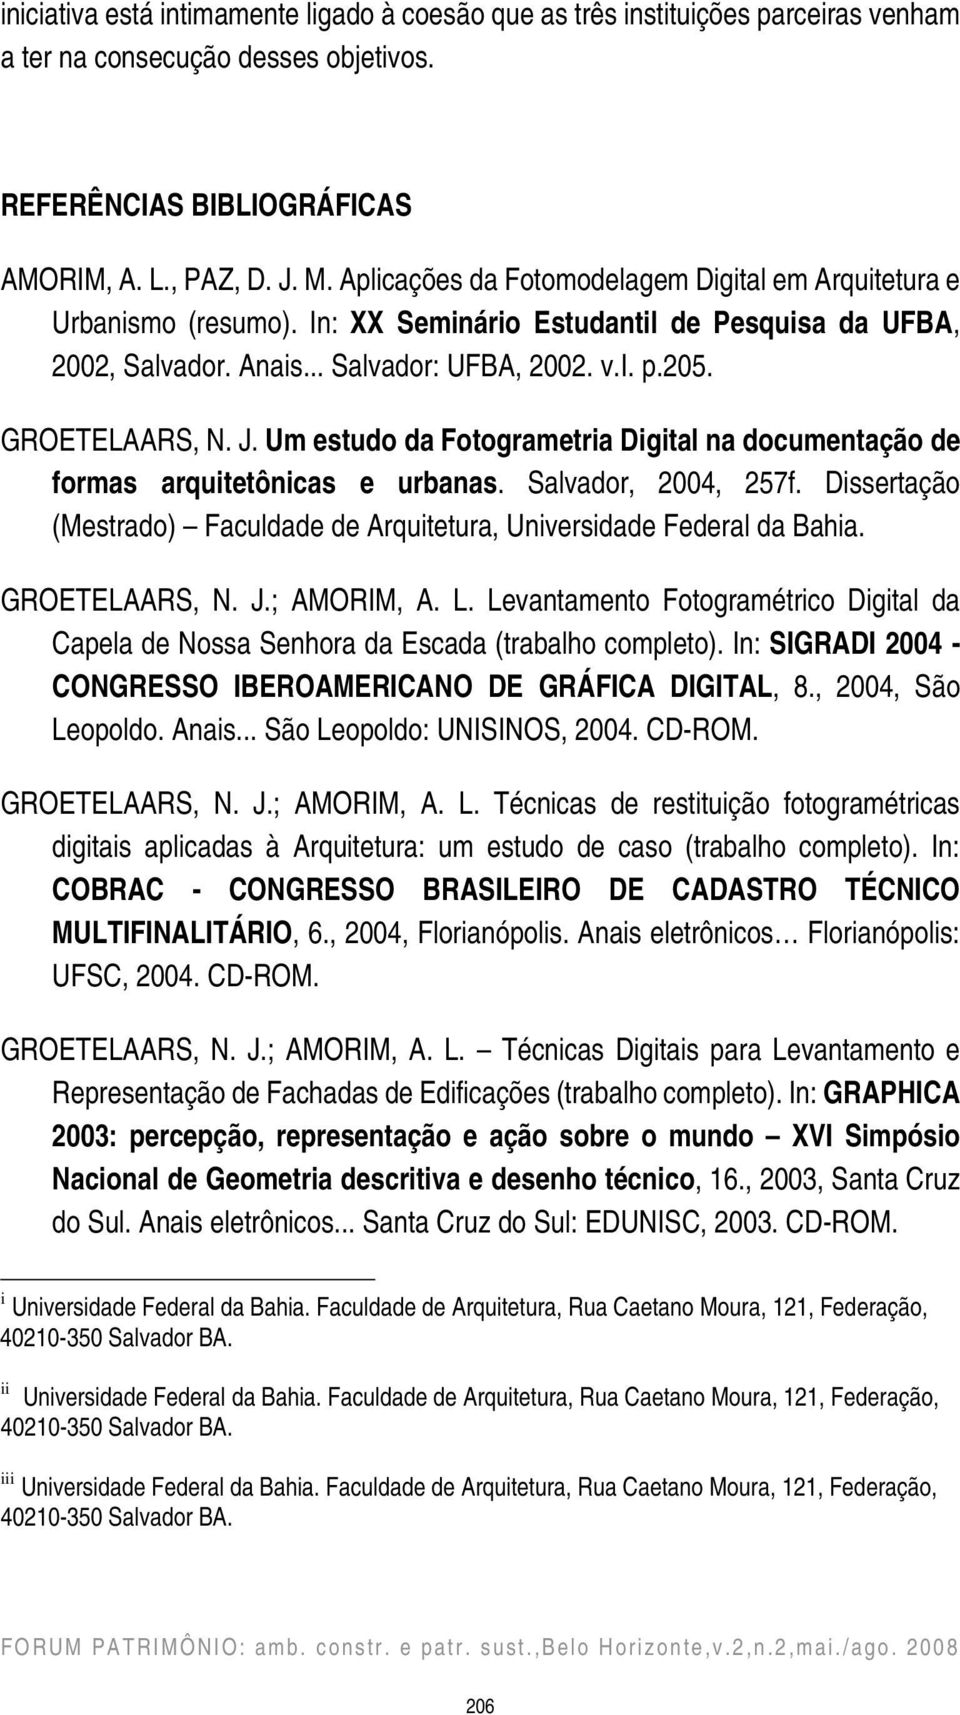 Um estudo da Fotogrametria Digital na documentação de formas arquitetônicas e urbanas. Salvador, 2004, 257f. Dissertação (Mestrado) Faculdade de Arquitetura, Universidade Federal da Bahia.